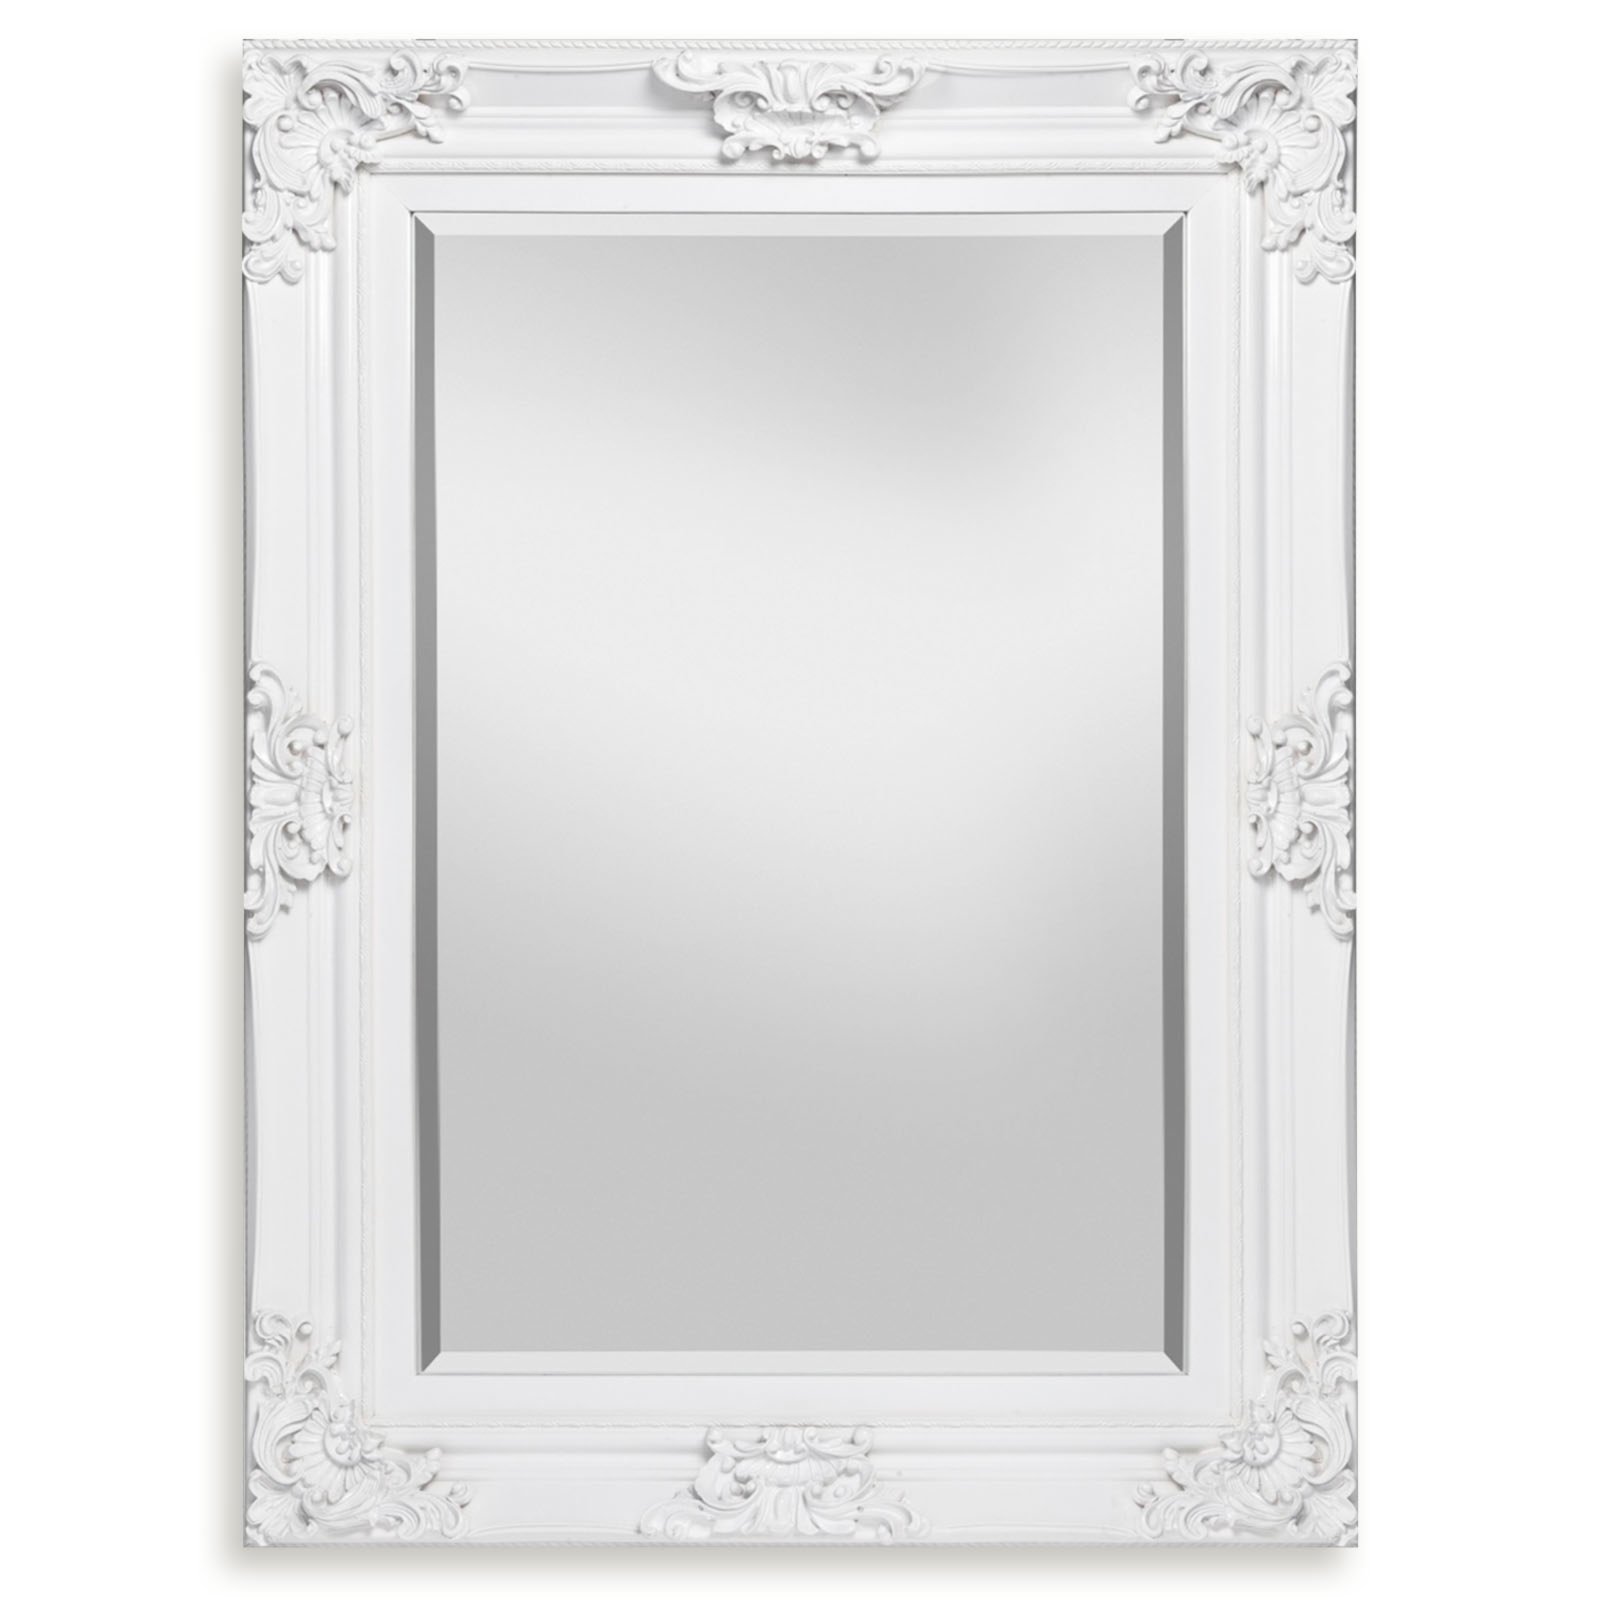 Spiegel - weiß Hochglanz - 85x115 cm